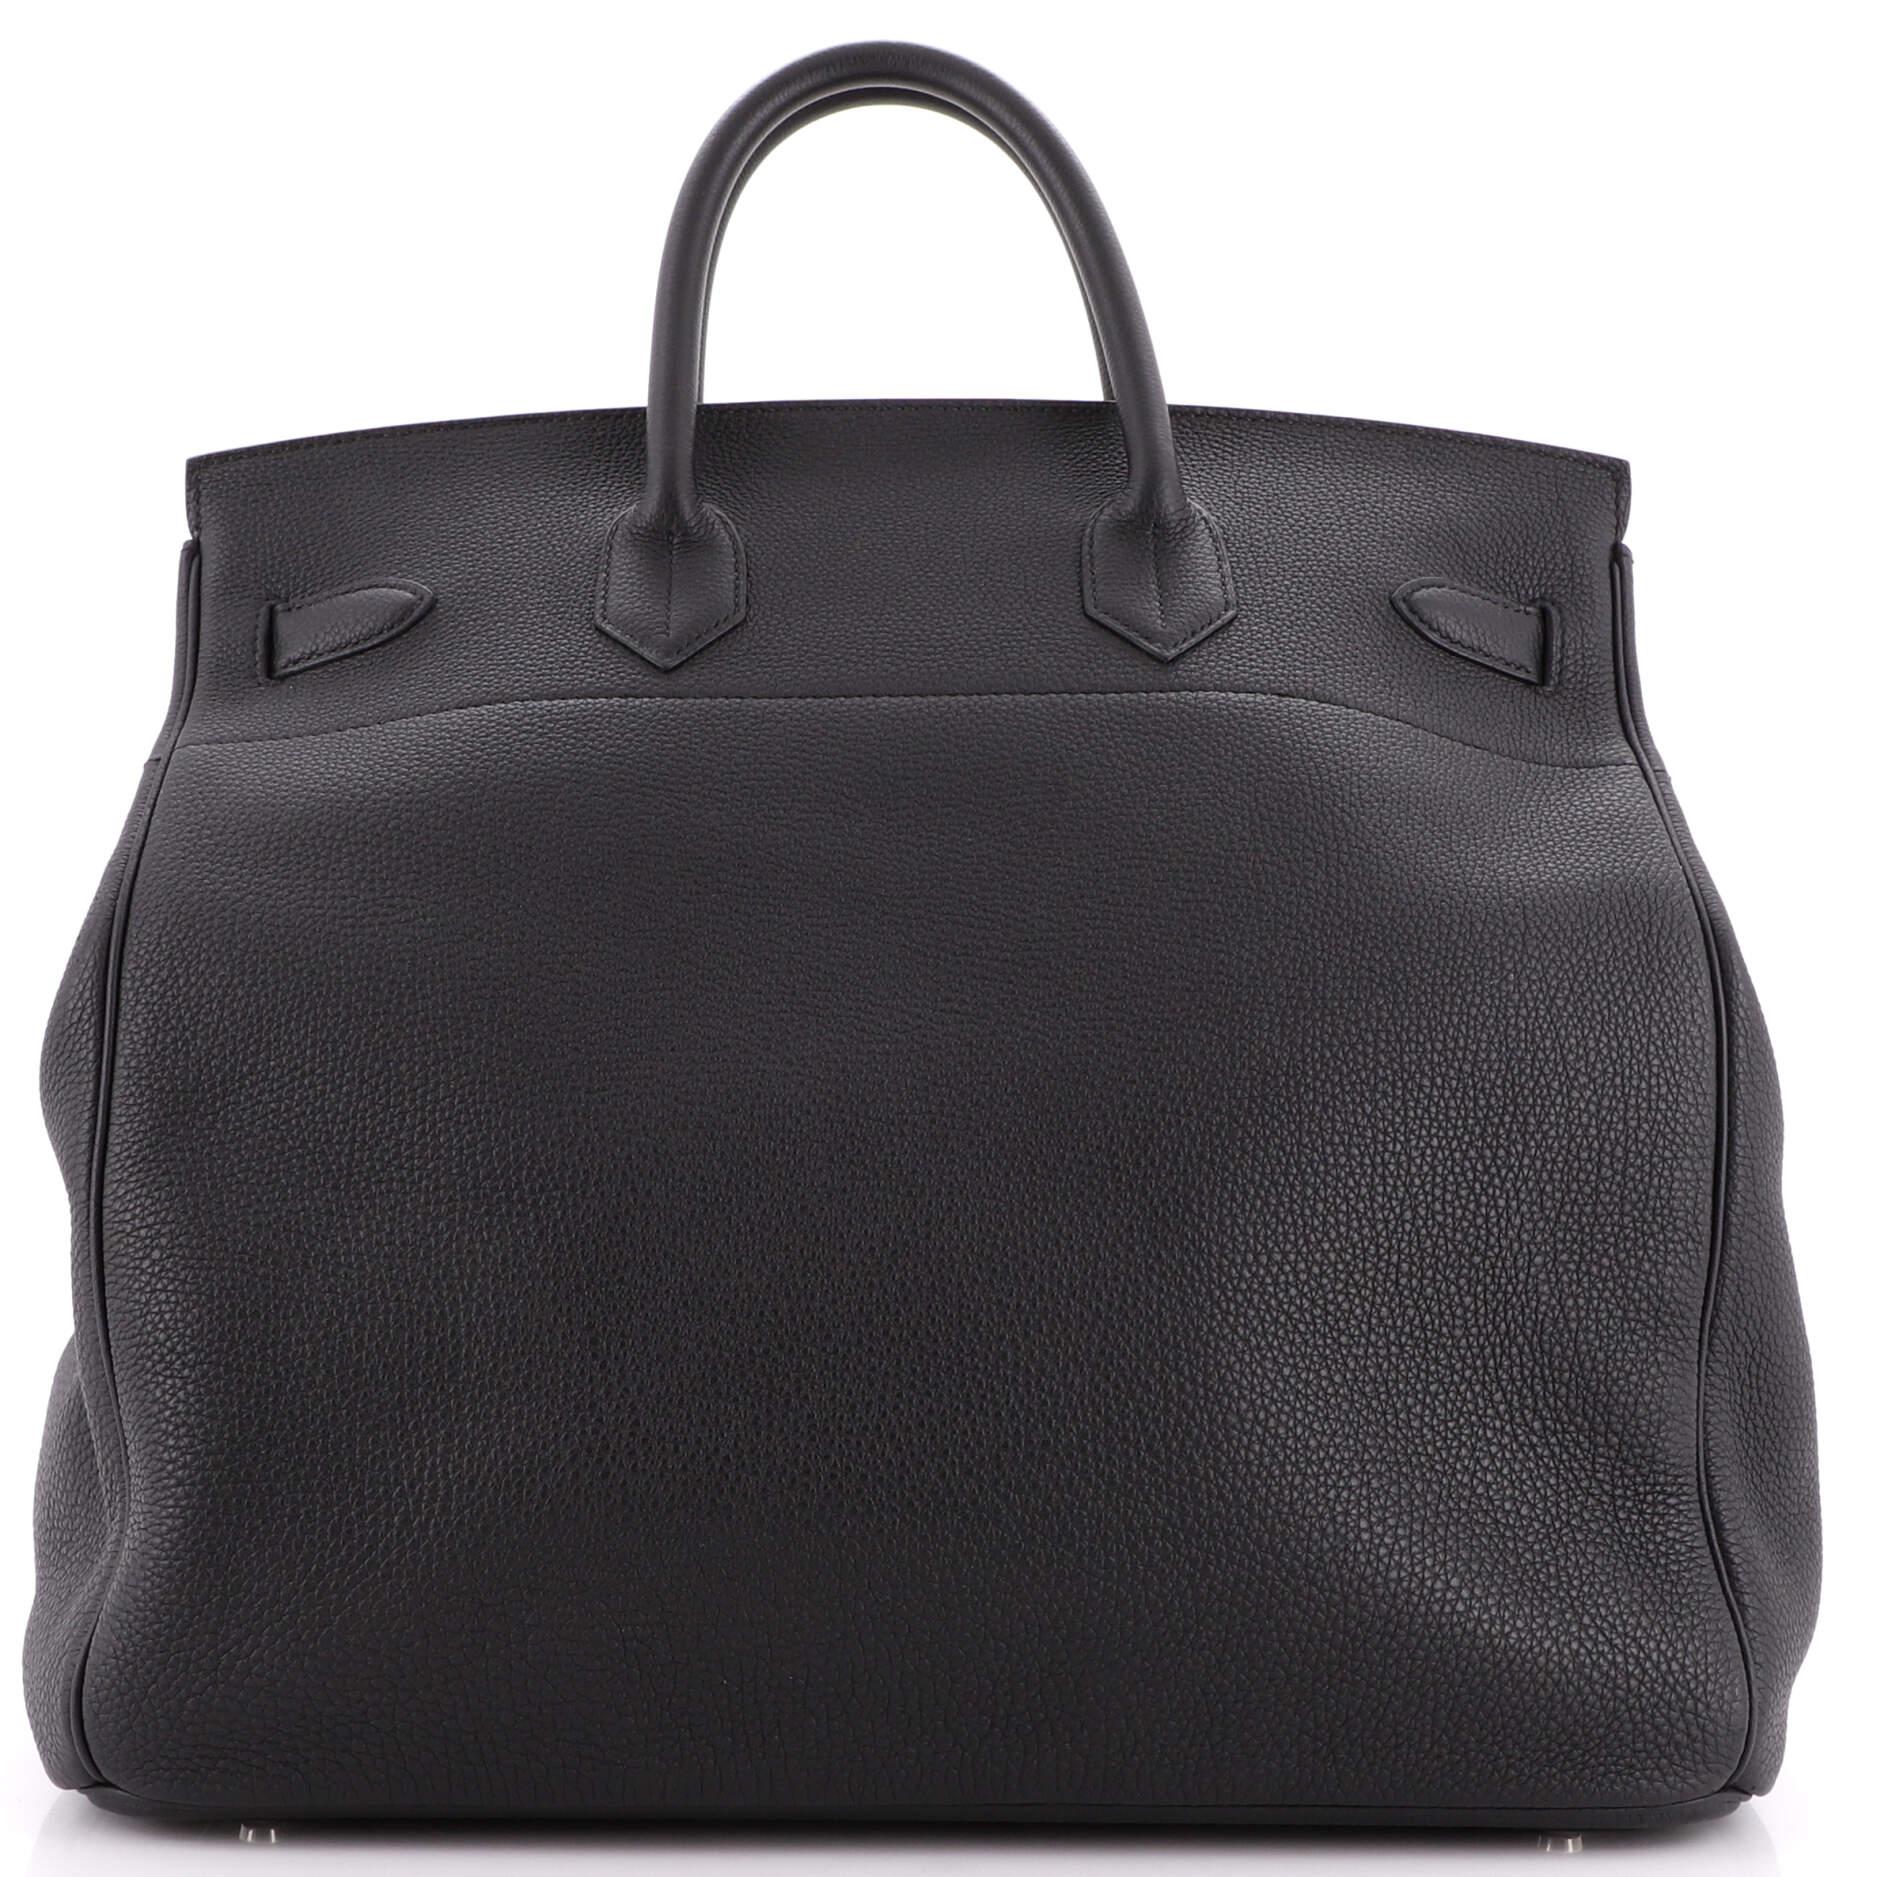 Women's Hermes HAC Birkin Bag Noir Togo with Palladium Hardware 40